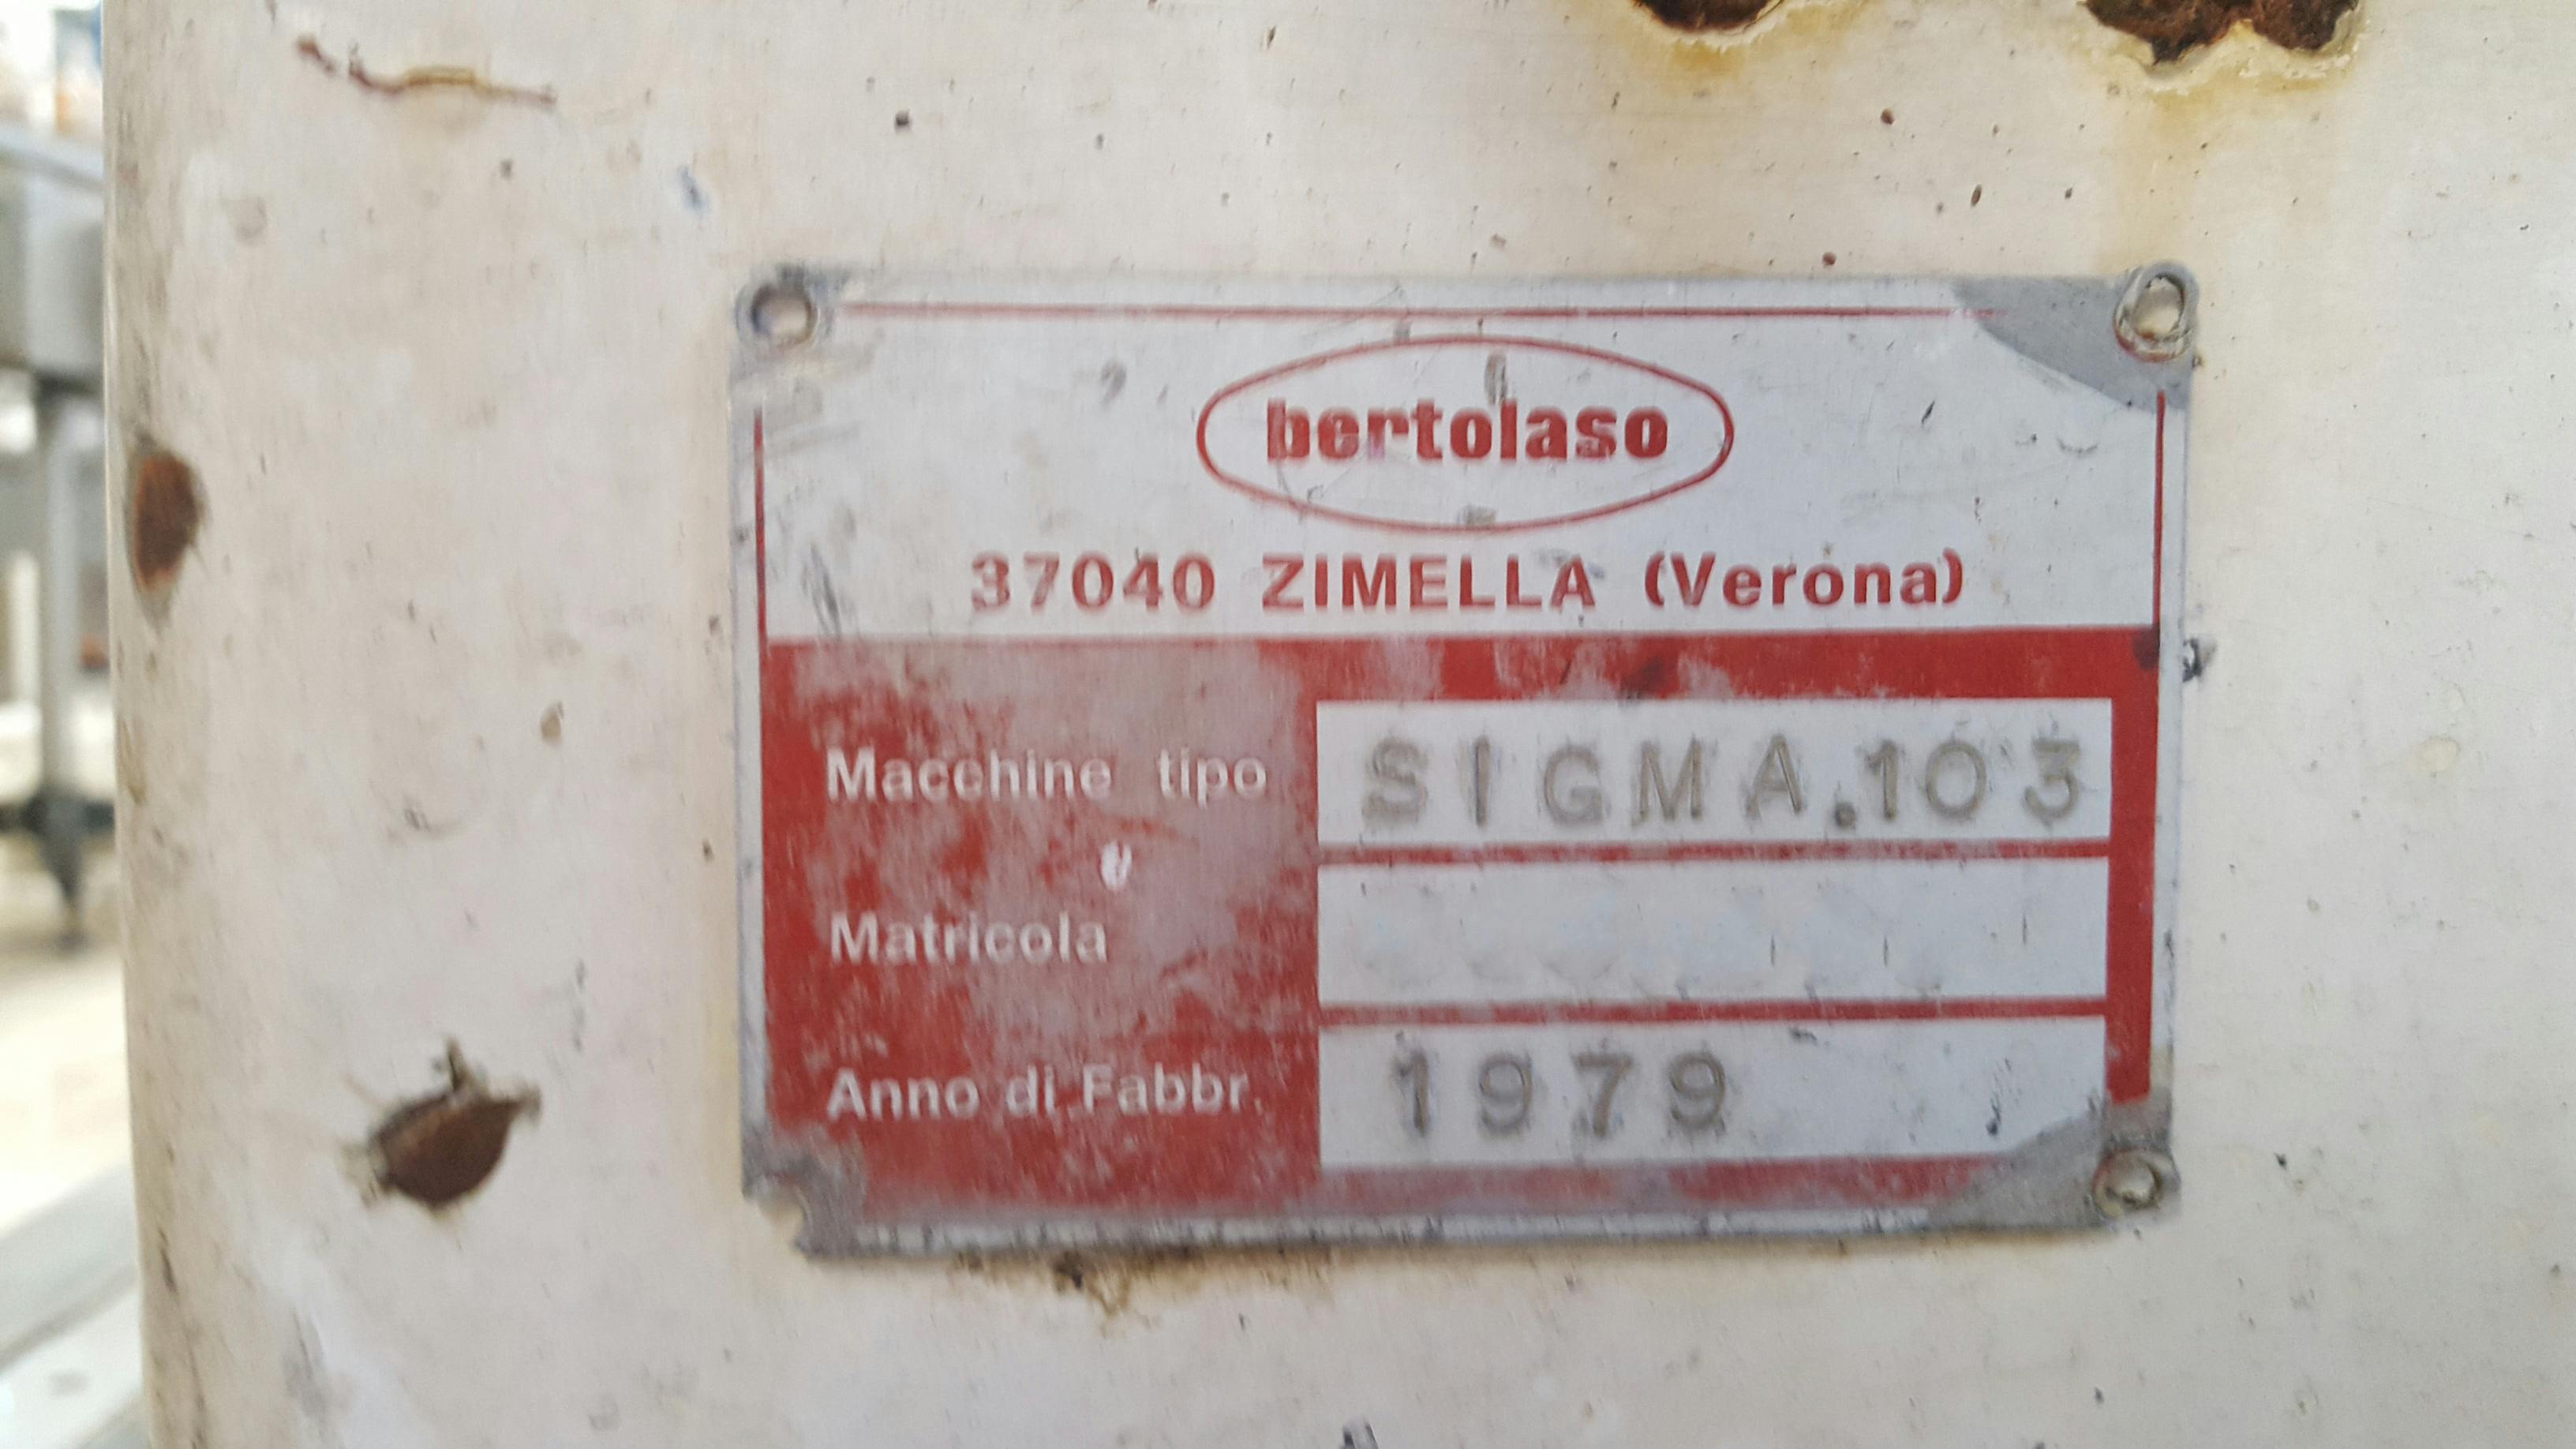 Nameplate of Bertolaso Sigma 103 